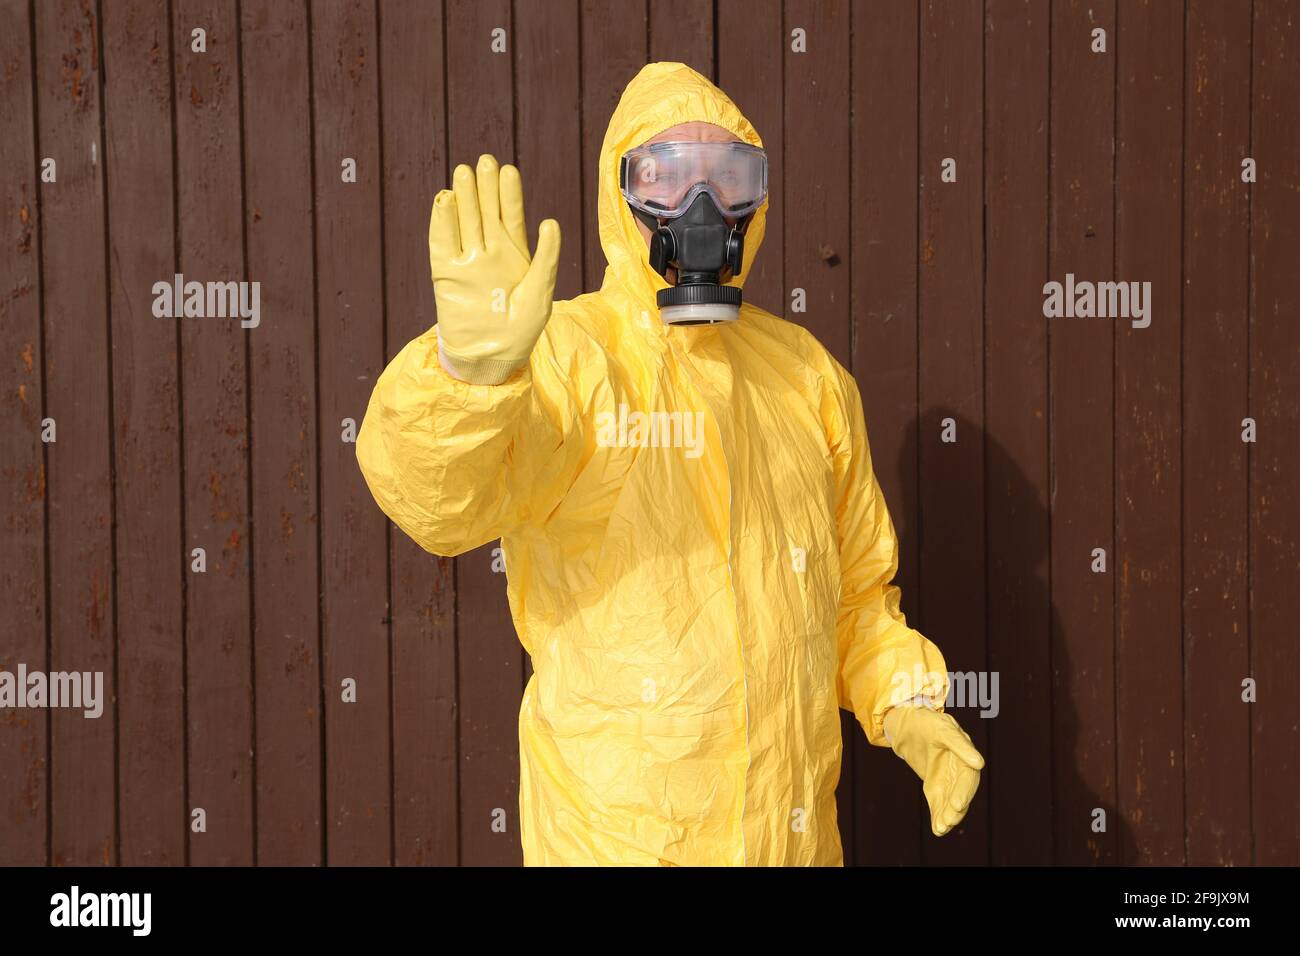 Mann im Schutzanzug hält die Hand hoch - workwear and protective clothing Stock Photo